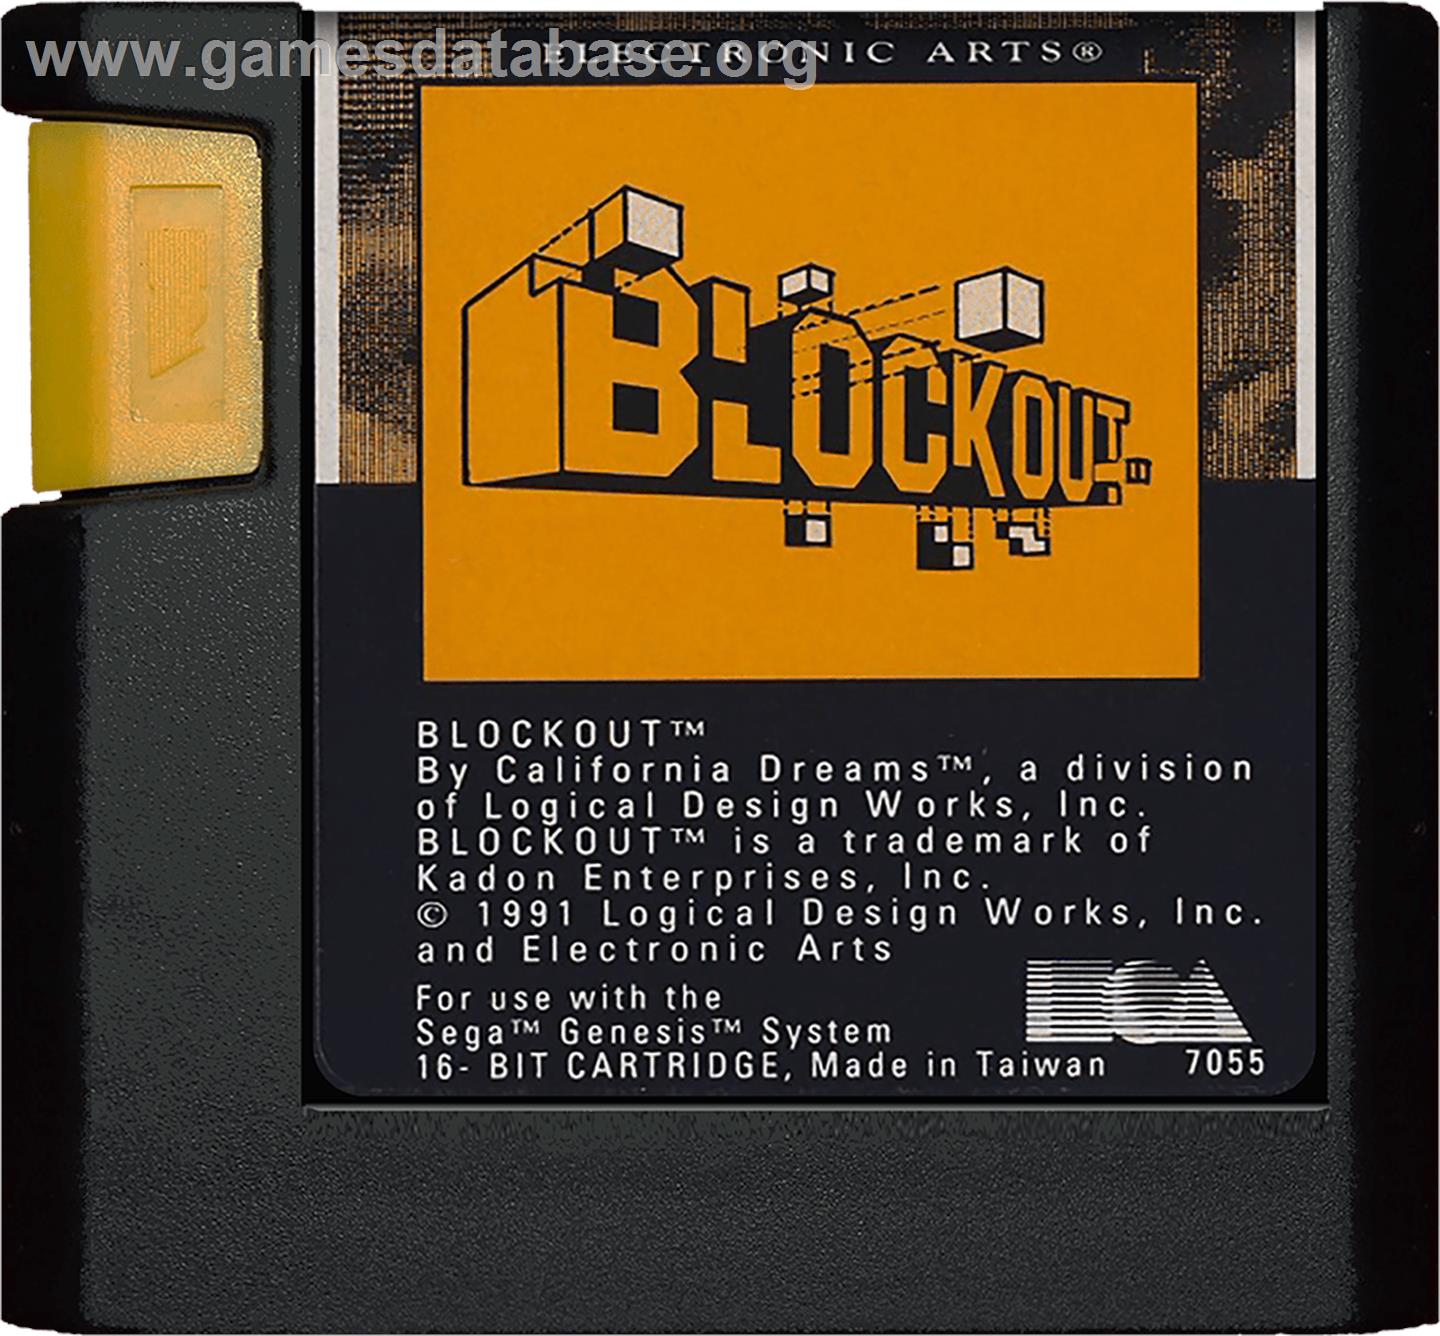 Blockout - Sega Genesis - Artwork - Cartridge